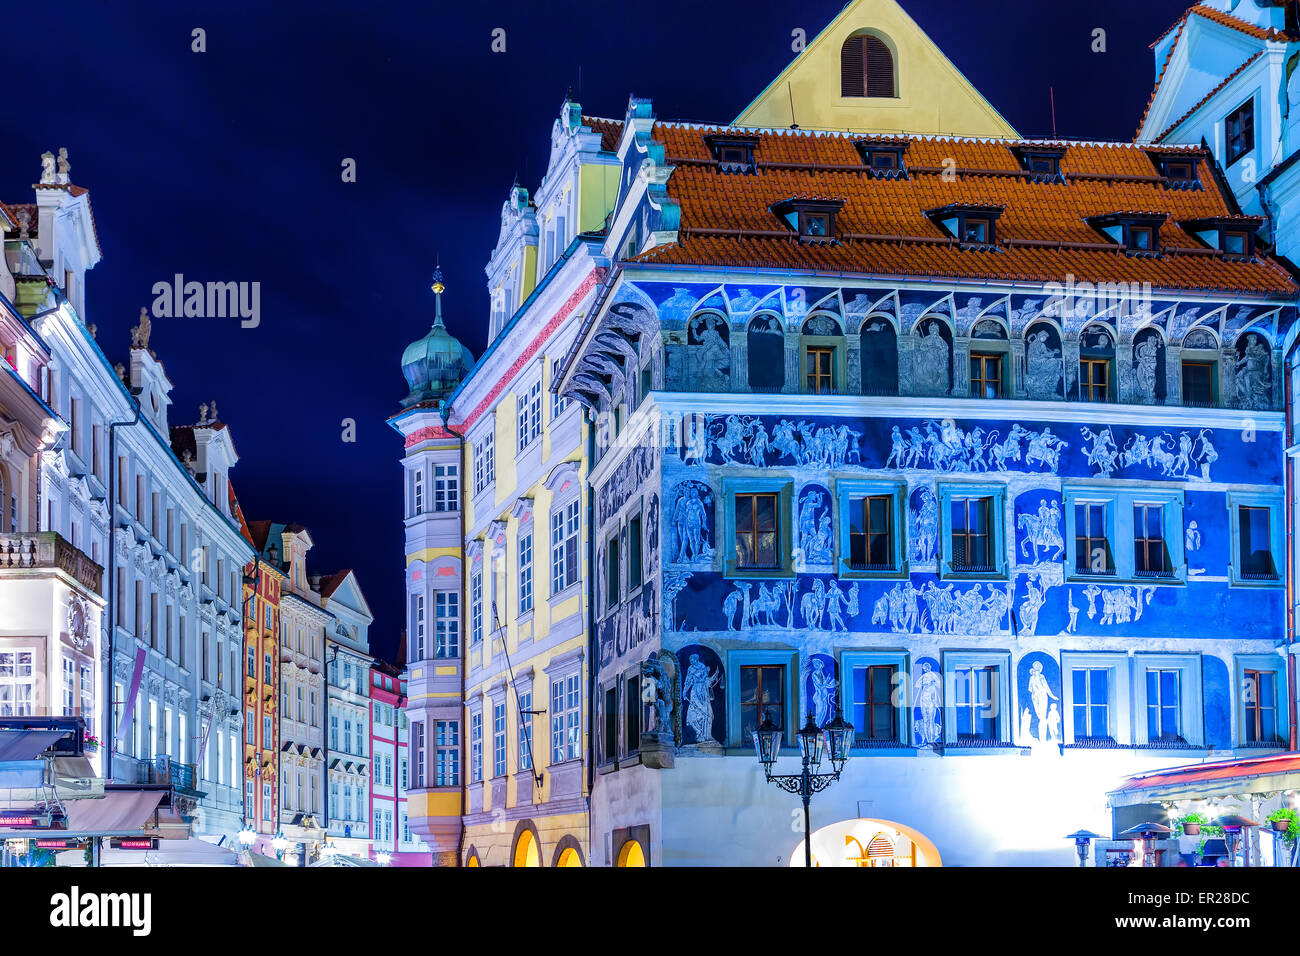 Nacht Blick auf die Altstadt Altstädter Ring (Staromestske Namesti) in Prag: Gebäude, Häuser und Markt Stockfoto